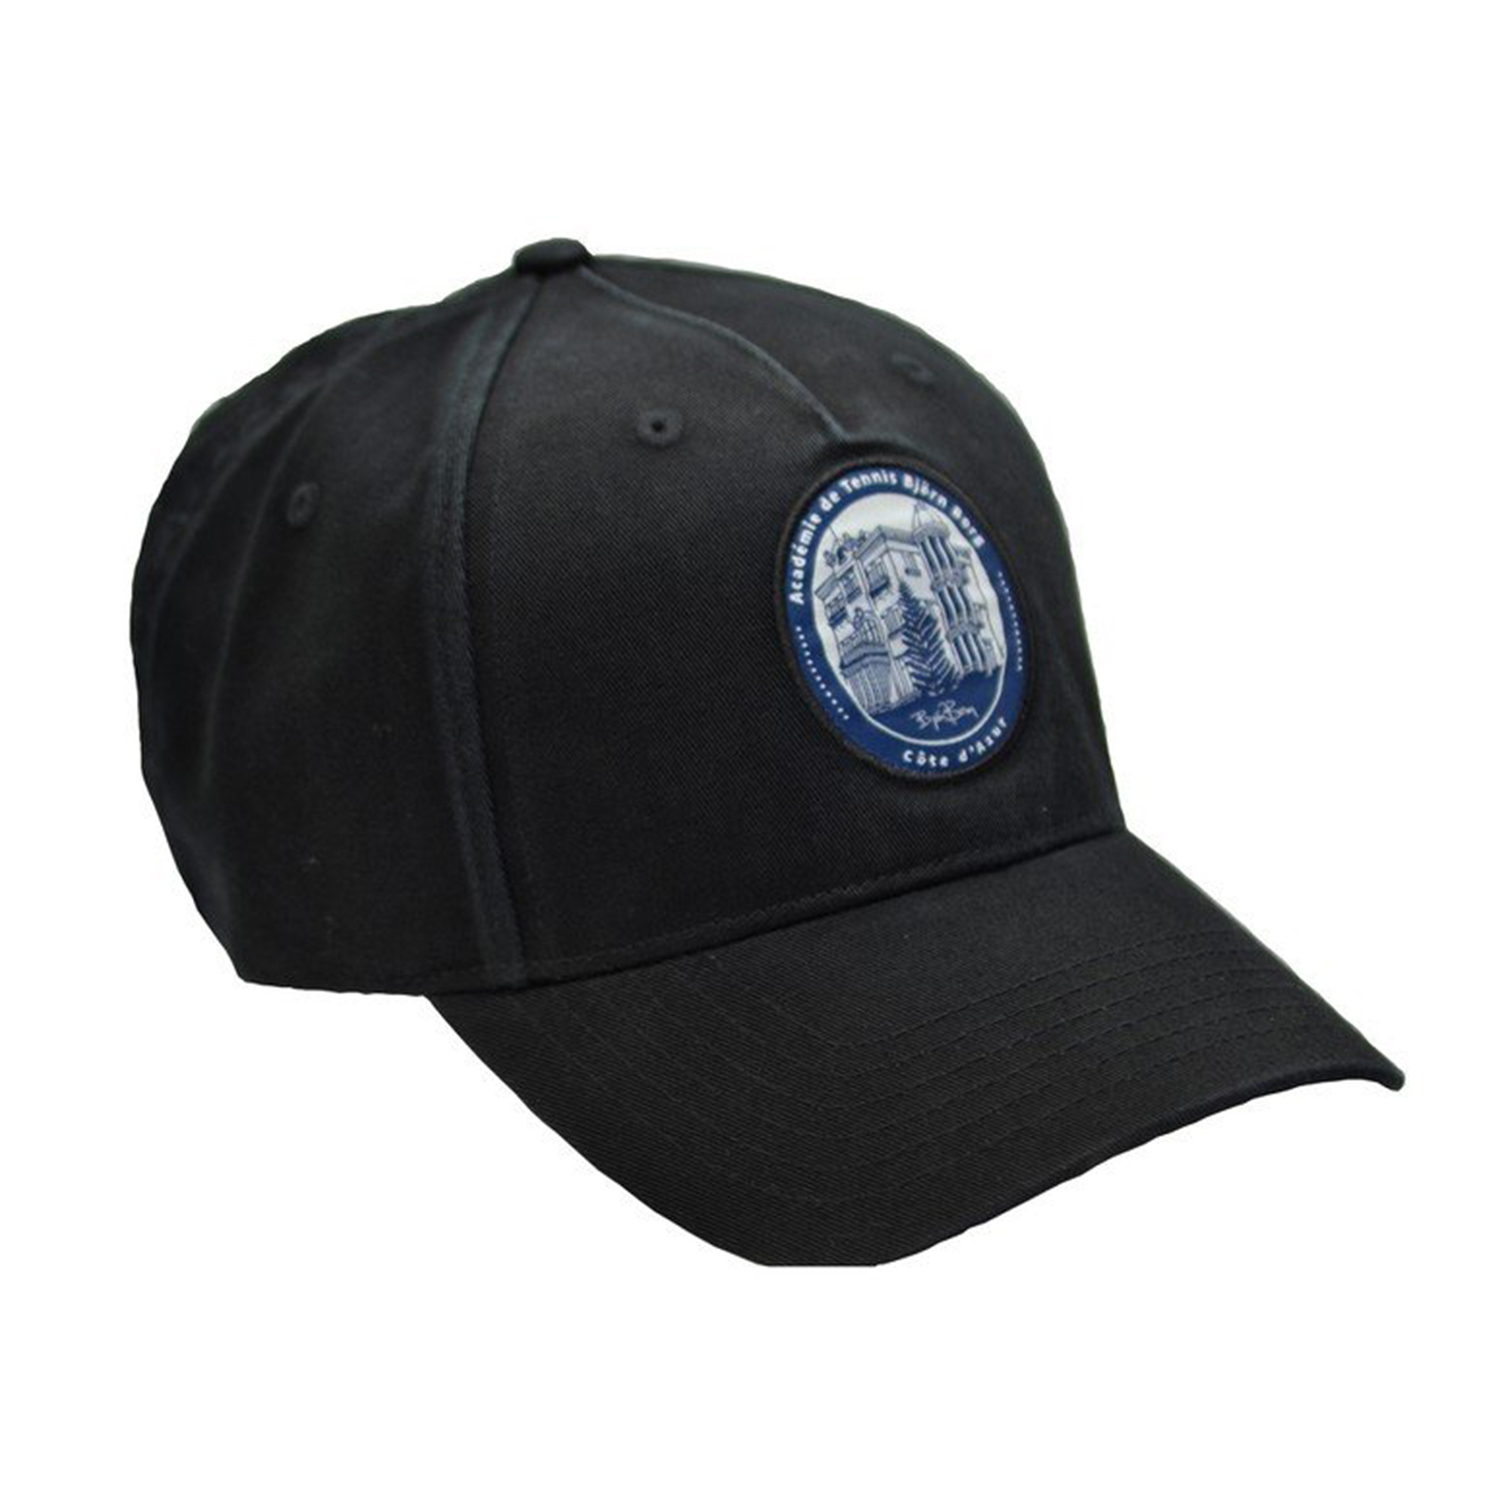 Ανδρικά/Αξεσουάρ/Καπέλα/Αθλητικά BJORN BORG - Αθλητικό καπέλο BJORN BORG μαύρο